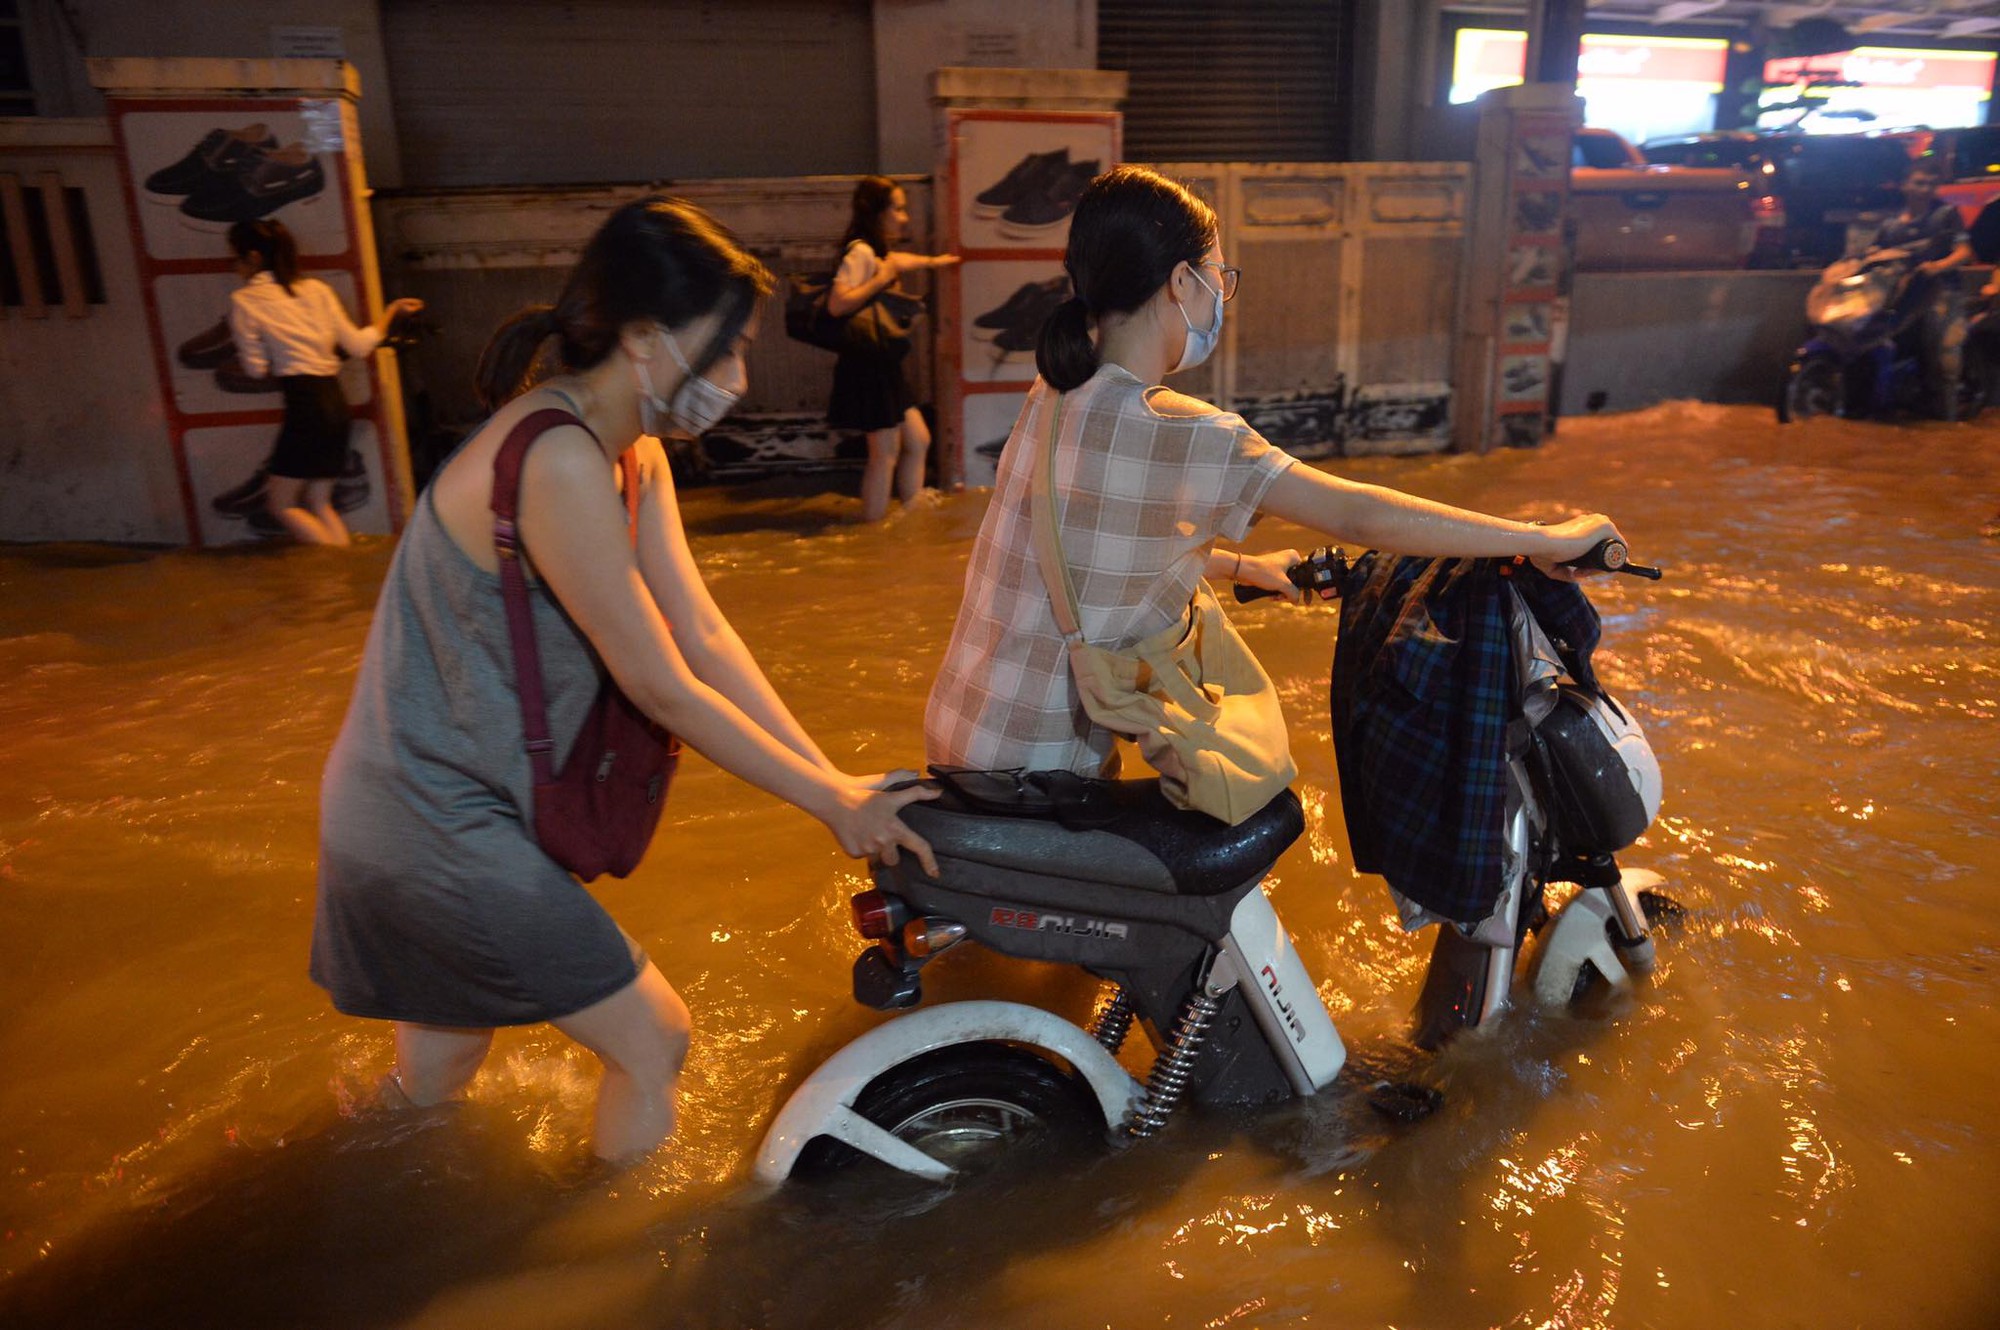 Dân công sở Hà Nội than trời trong ngày mưa ngập và tắc kinh hoàng: Có vài km mà mất tới 2, thậm chí 3 tiếng đồng hồ mới về đến nhà - Ảnh 4.